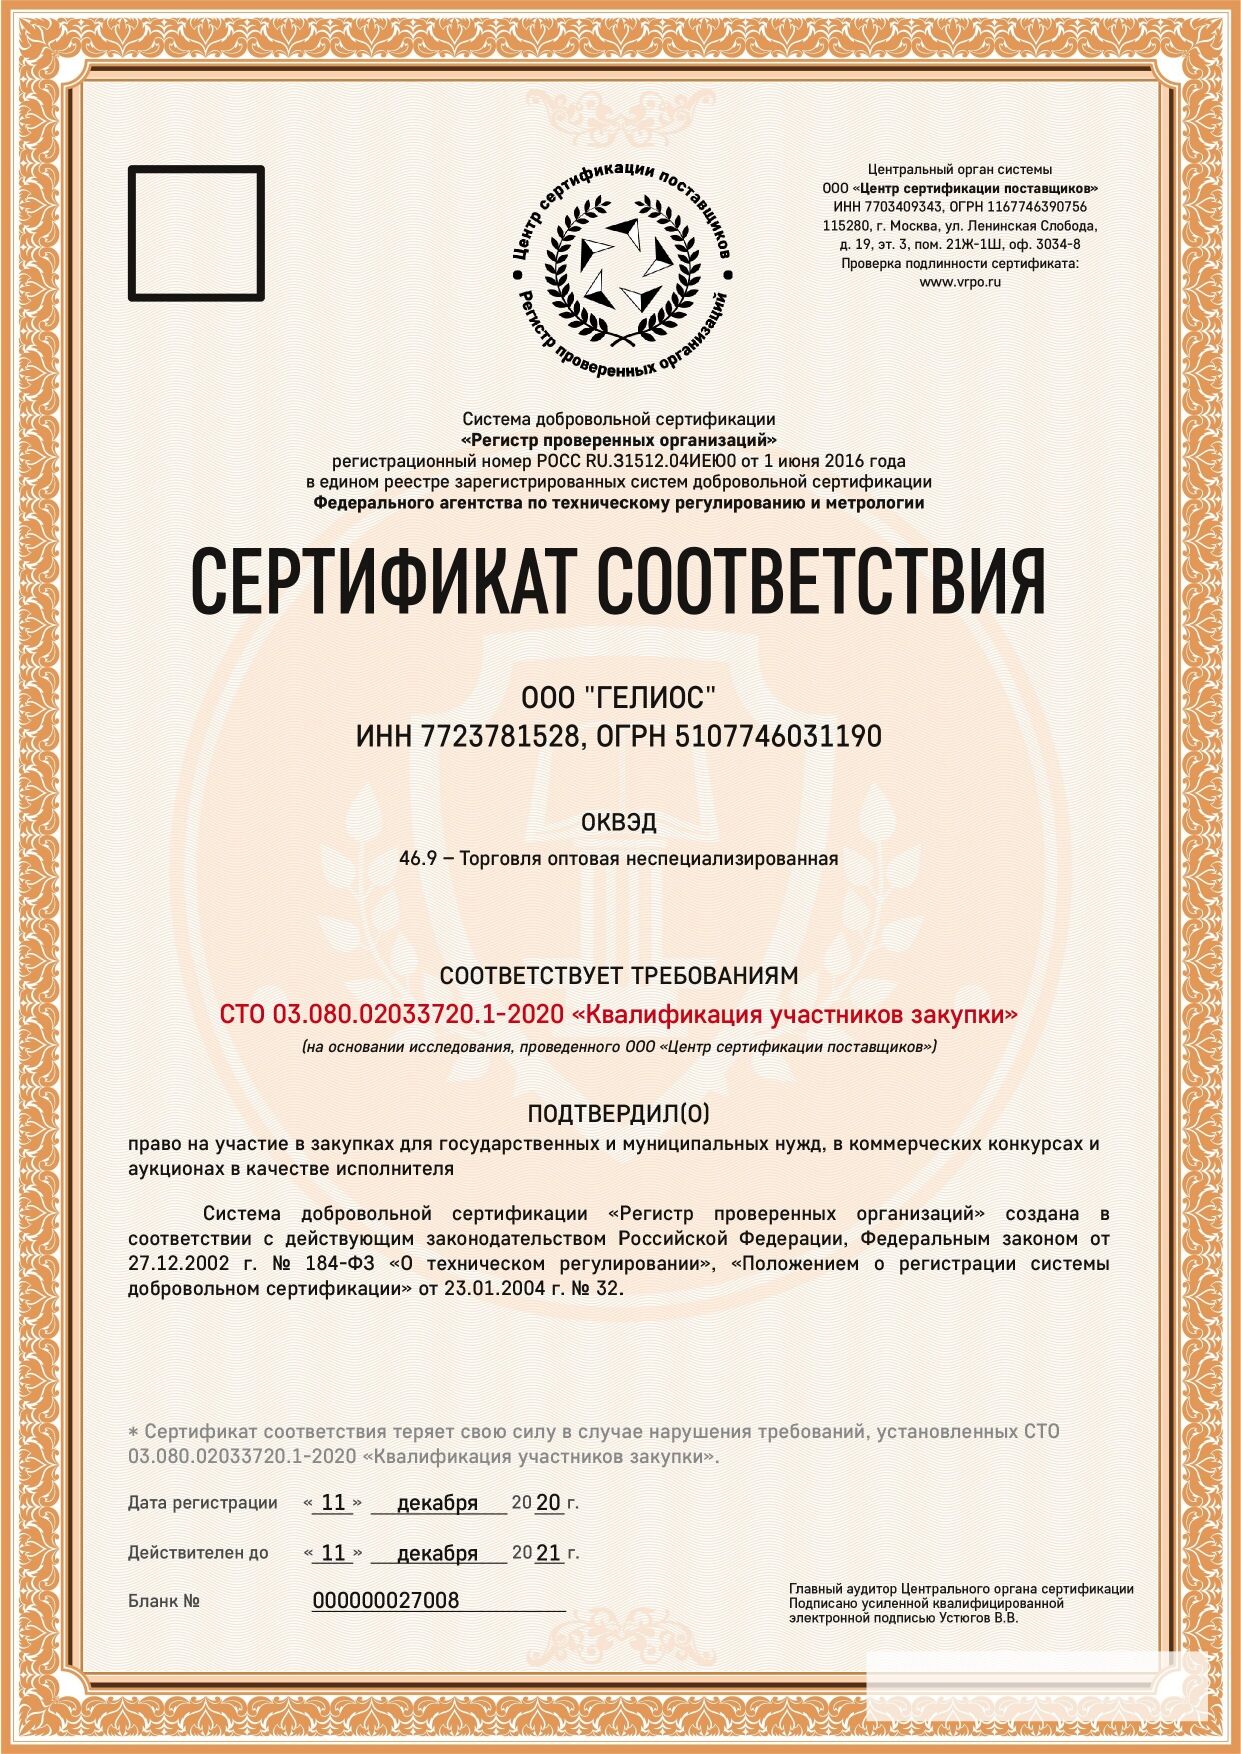 Сертификат соответствия на участие в закупках